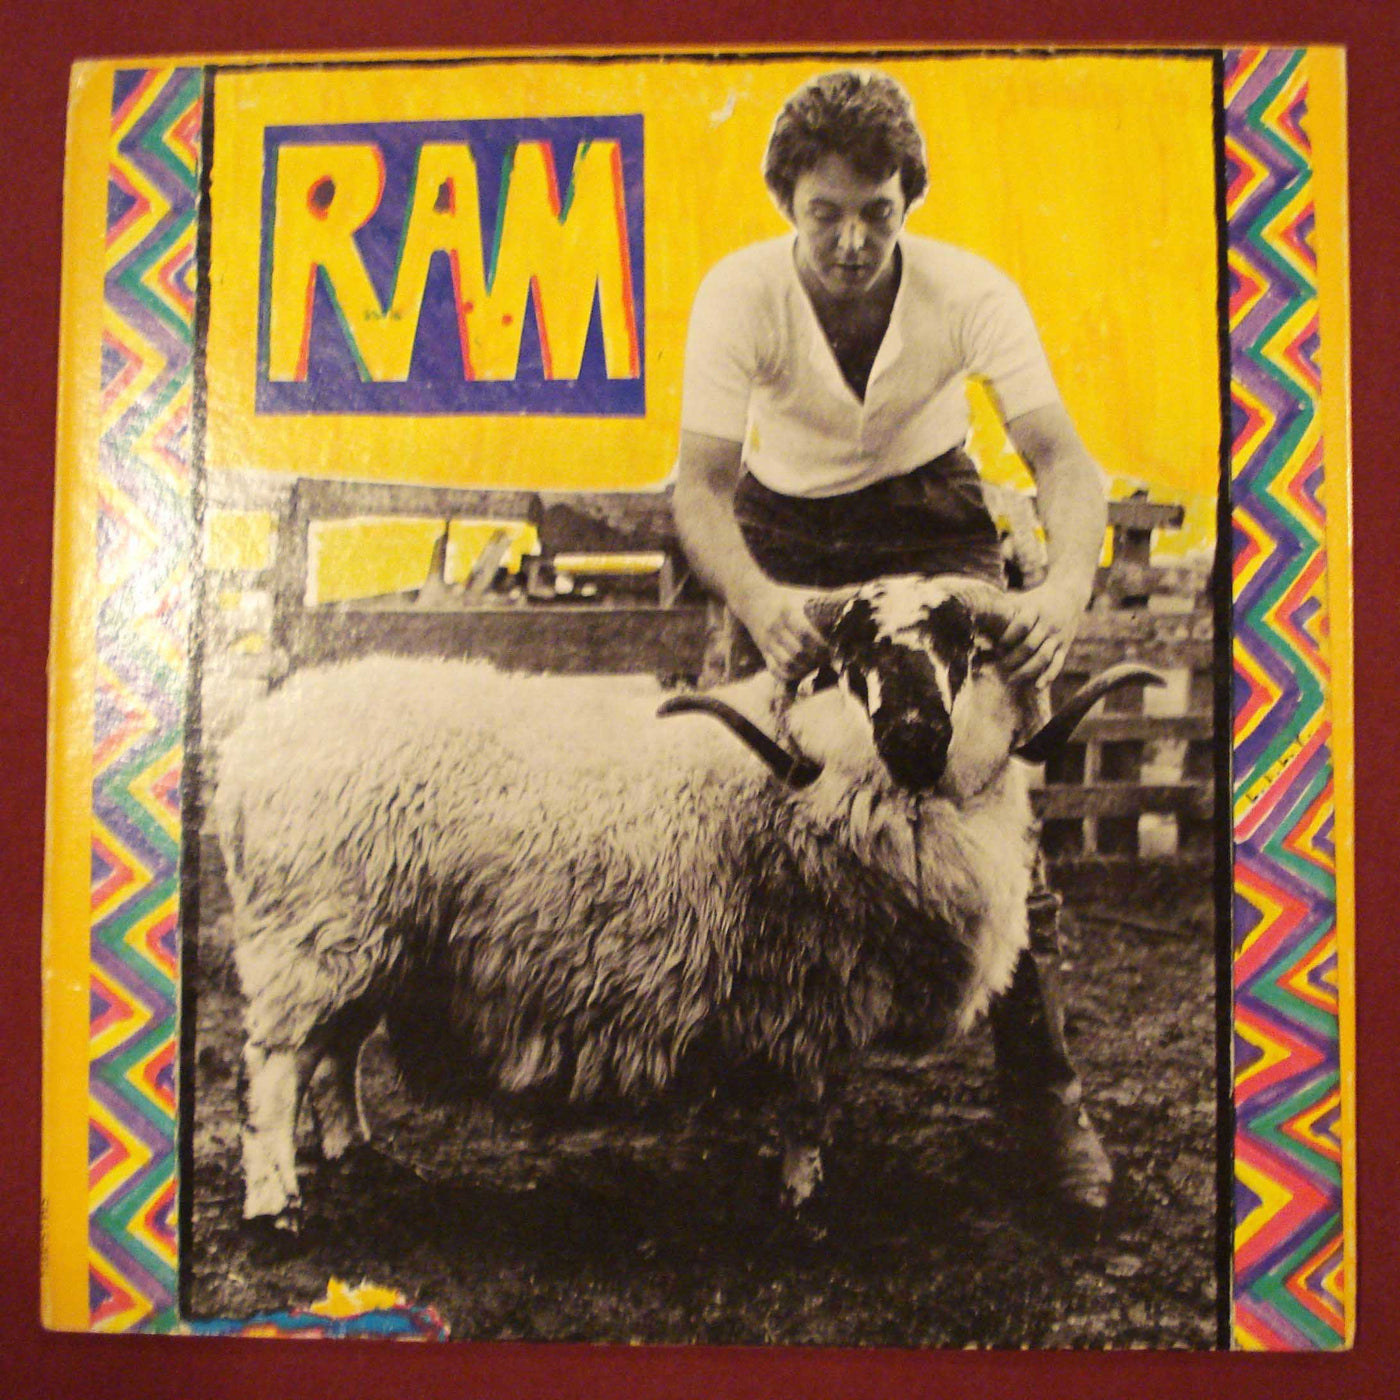 Paul & Linda McCartney - Ram (1971) Vinyl LP 33rpm SMAS-3375